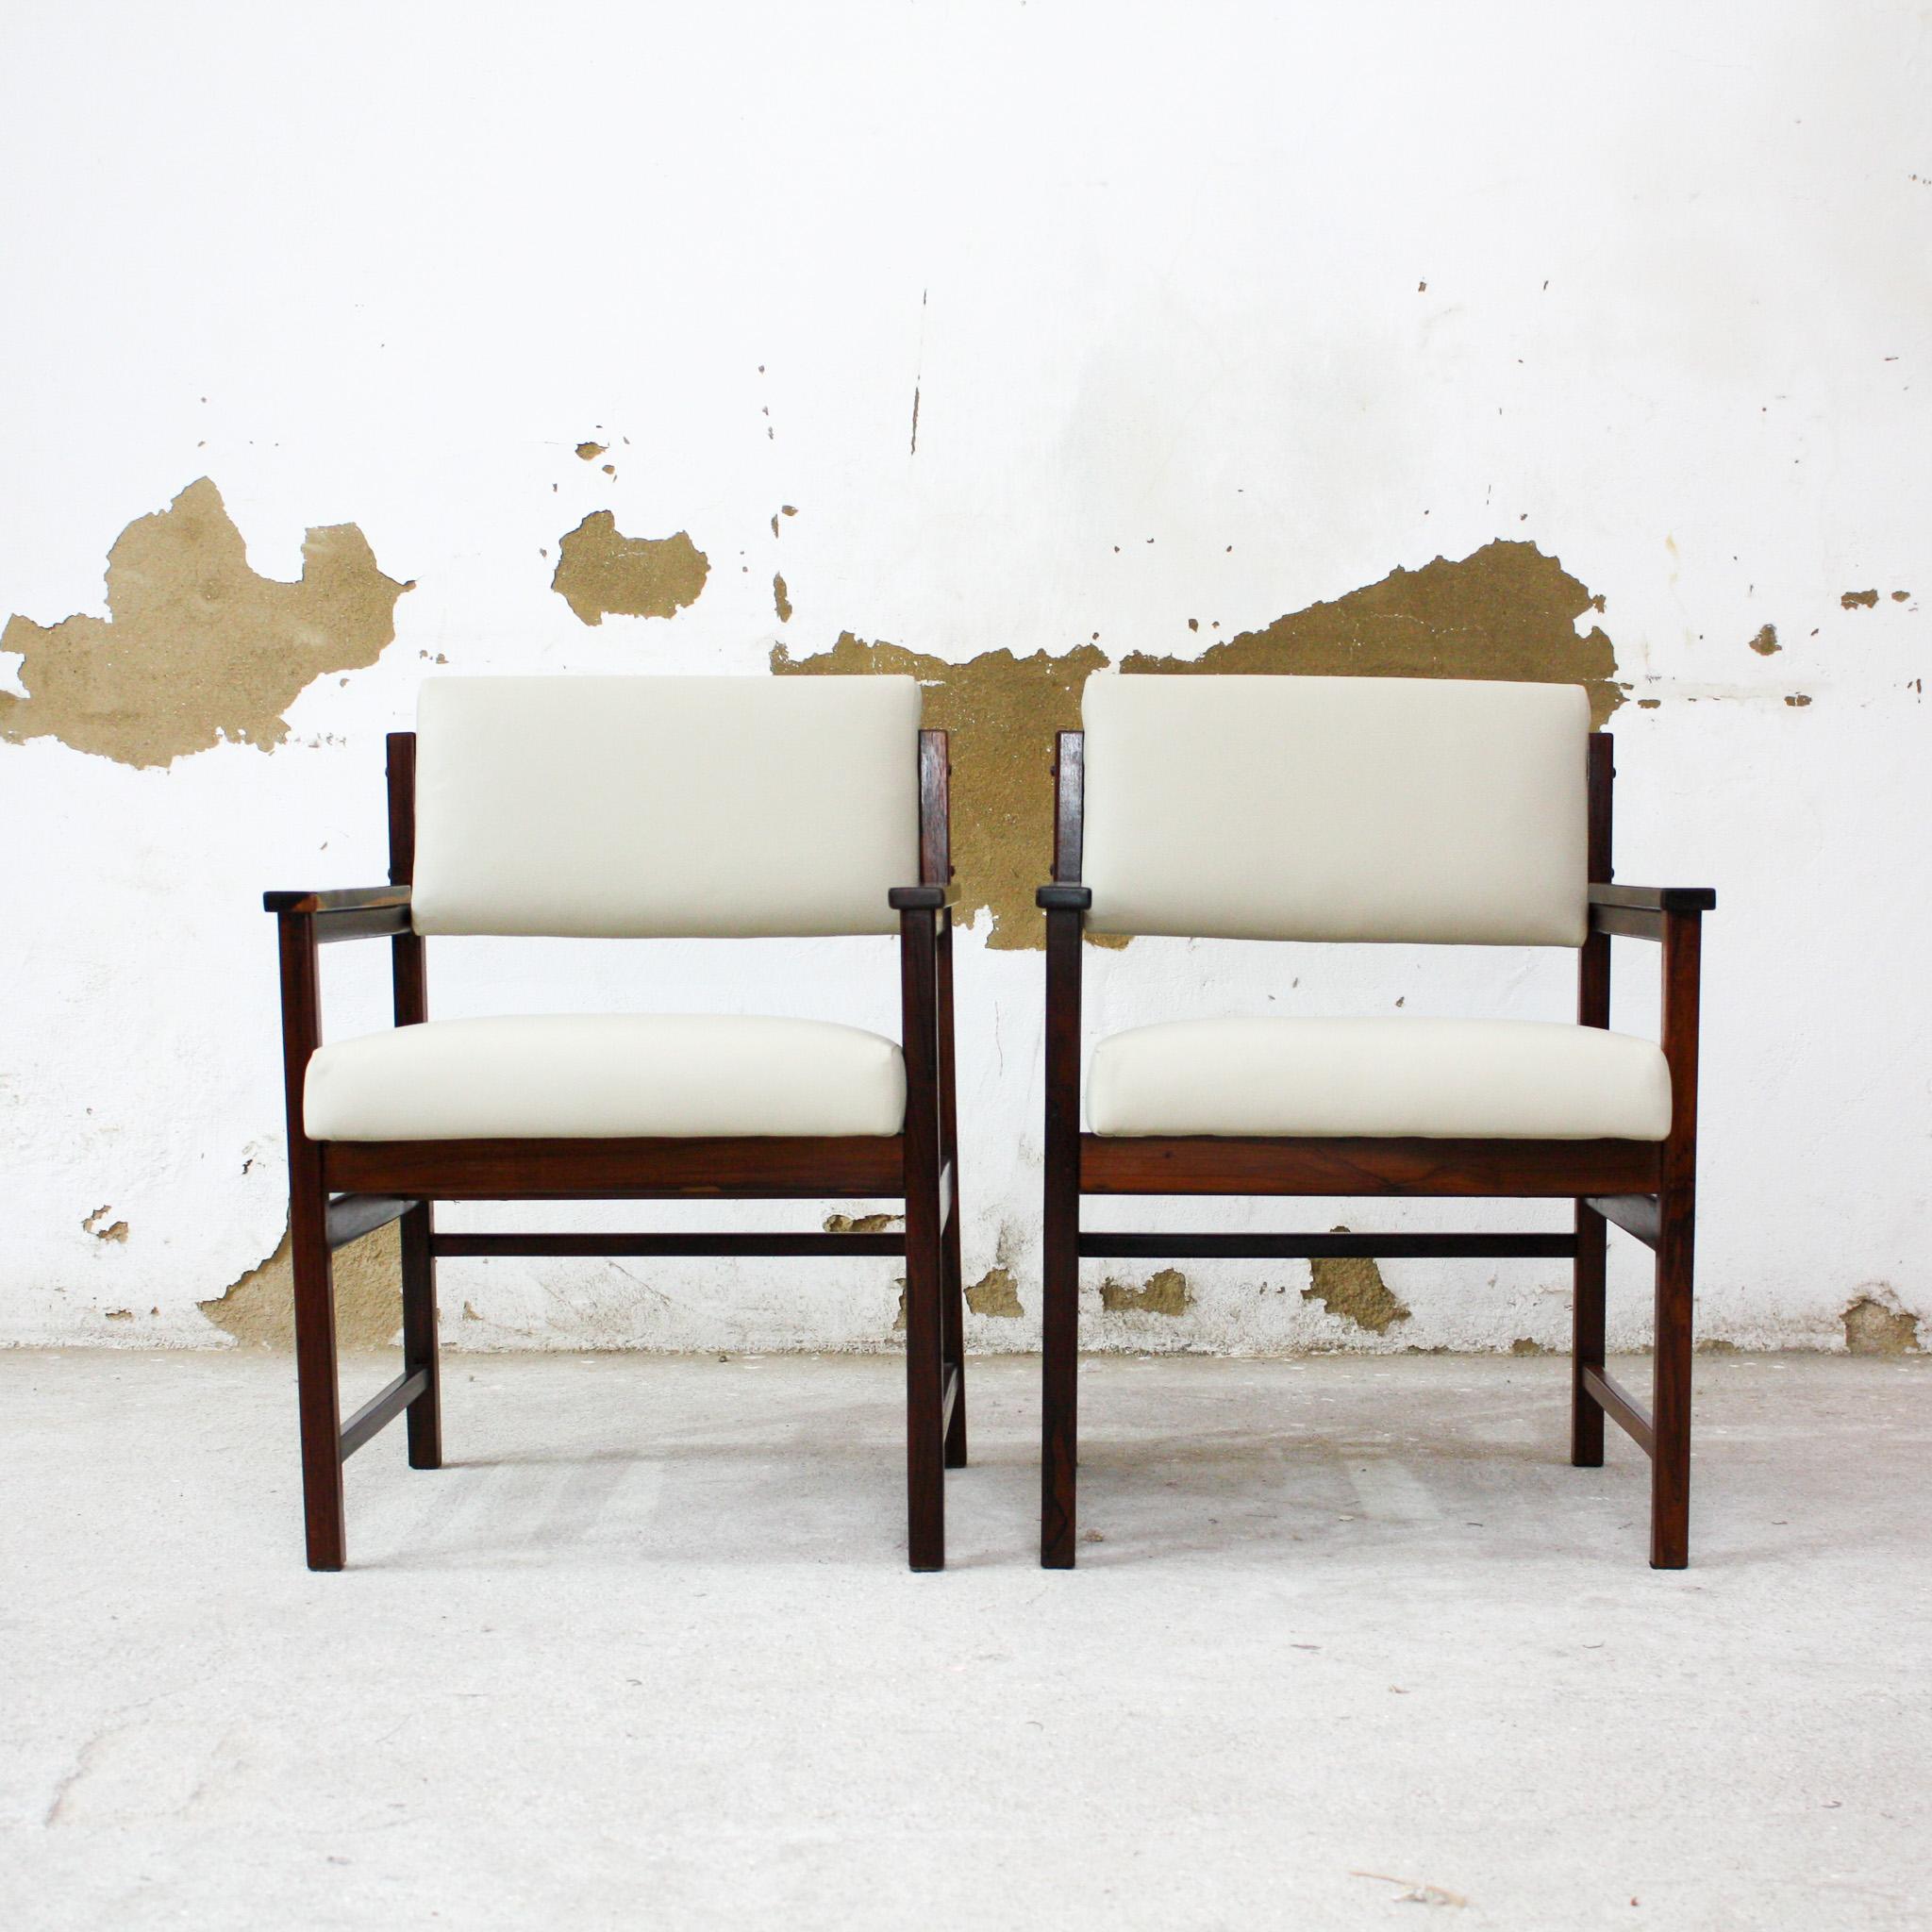 Diese einzigartigen modernen brasilianischen Sessel aus Hartholz und beigefarbenem Leder von Bureau Moveis aus den sechziger Jahren sind heute noch erhältlich und sind nichts weniger als wunderschön!

Die Sessel haben eine Holzstruktur aus massivem